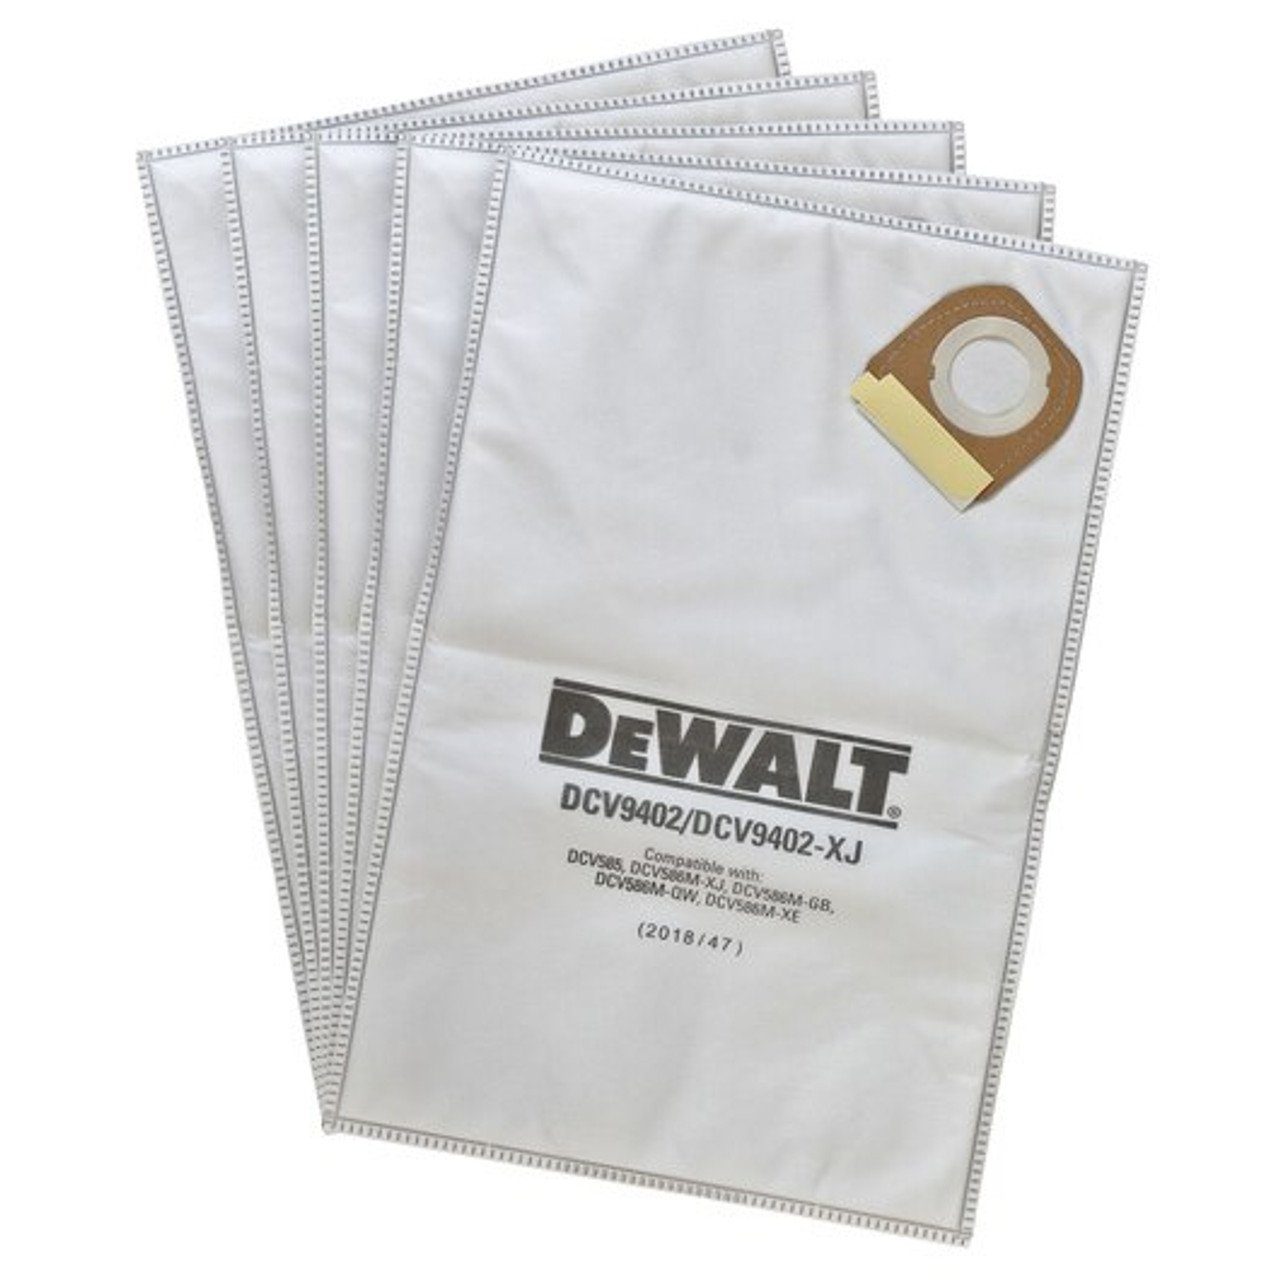 DeWalt Staubsaugerbeutel DeWalt original Fleece-Staubbeutel DWV900/901L (5 st) DWV9402, passend für Dewalt